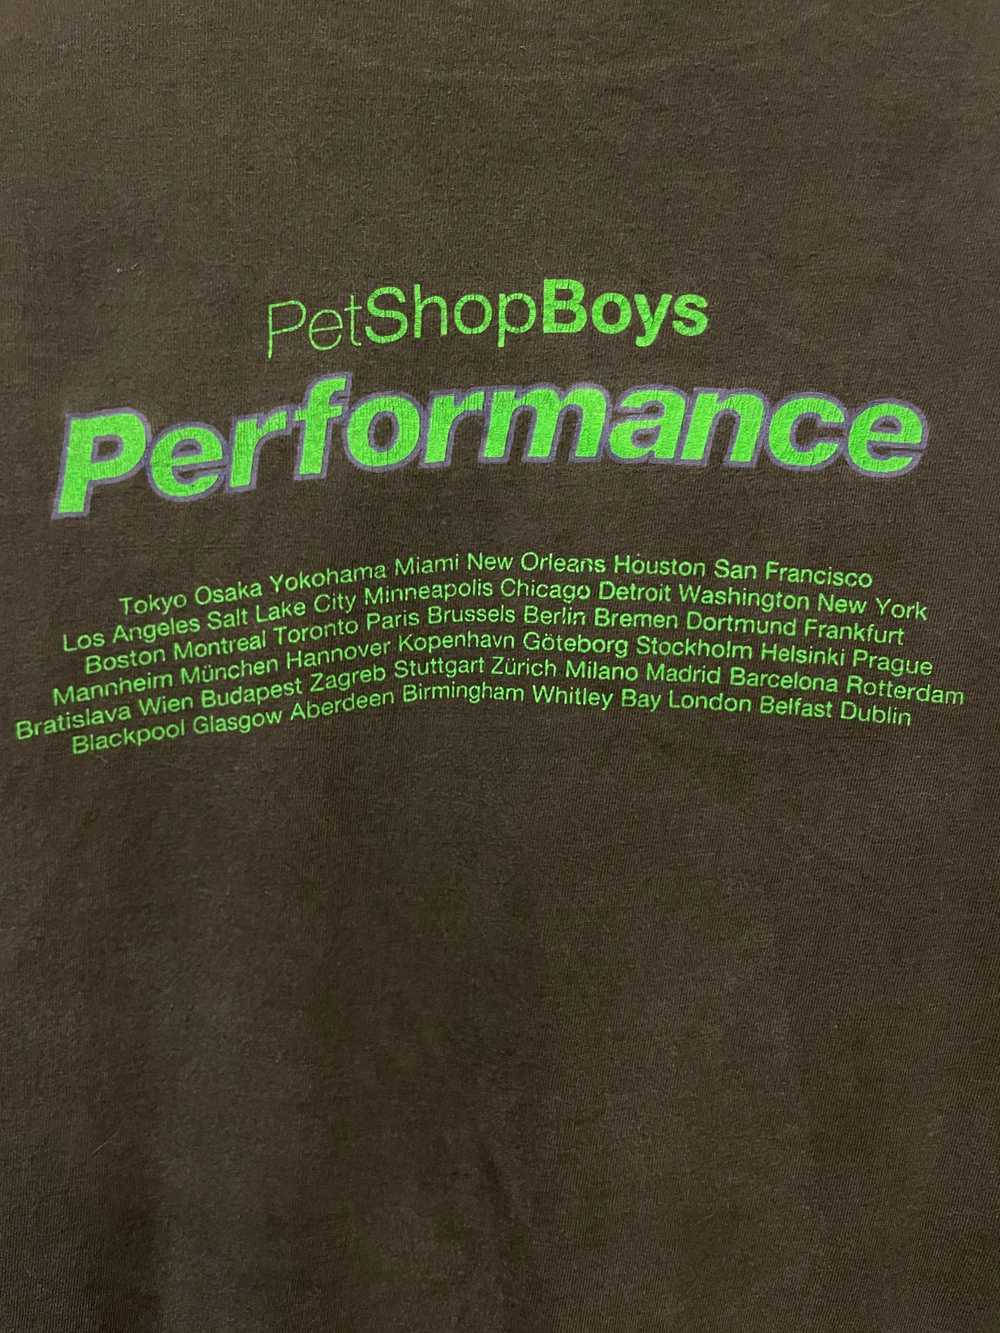 Vintage Pet Shop Boys 1991 shirt - image 3